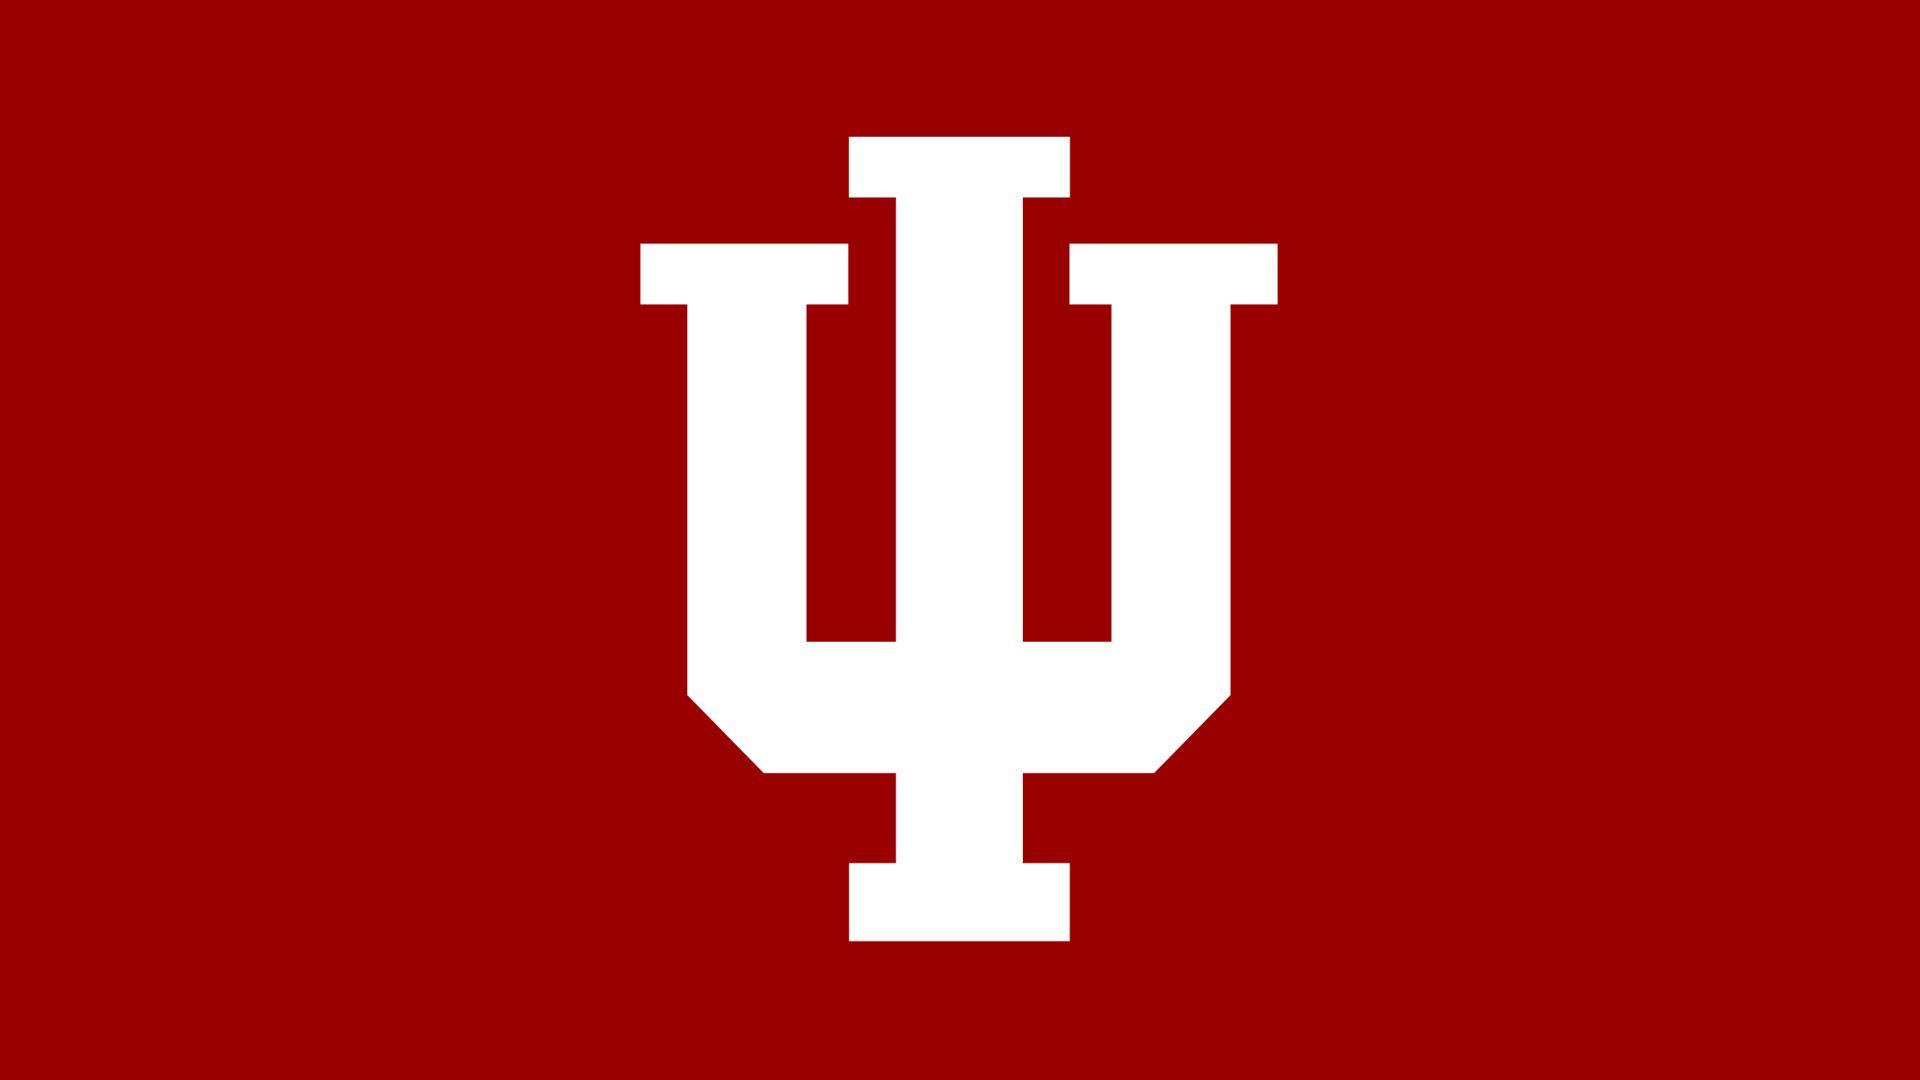 Indiana Univ Logo - Indiana University Head Women's Soccer Coach Amy Berbary's Contract